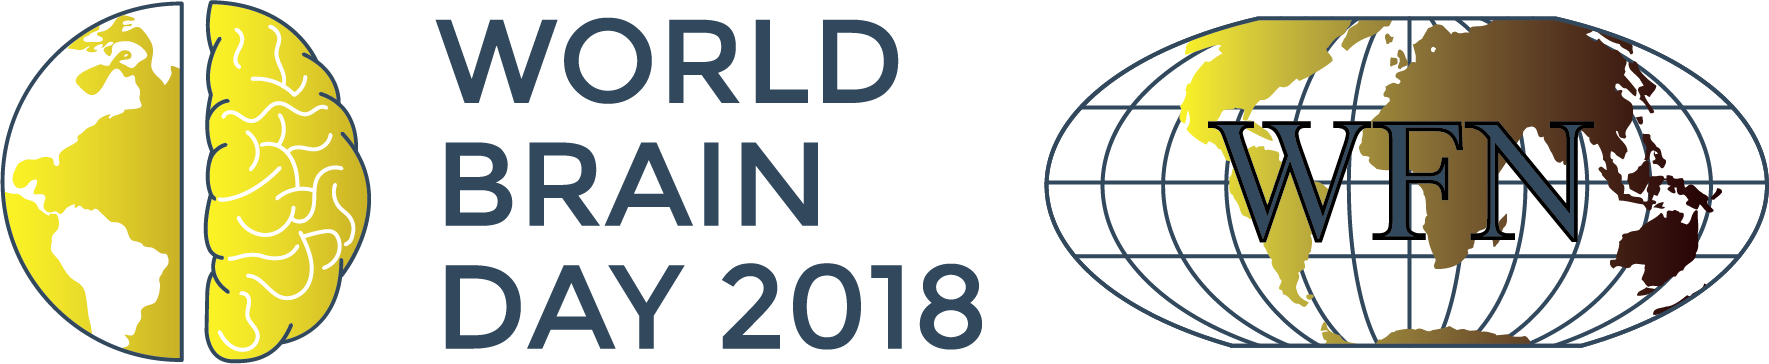 World brain. Всемирная Федерация невролов. World Brain Day. World Brain Day logo. Всемирная Федерация инженерных организаций.